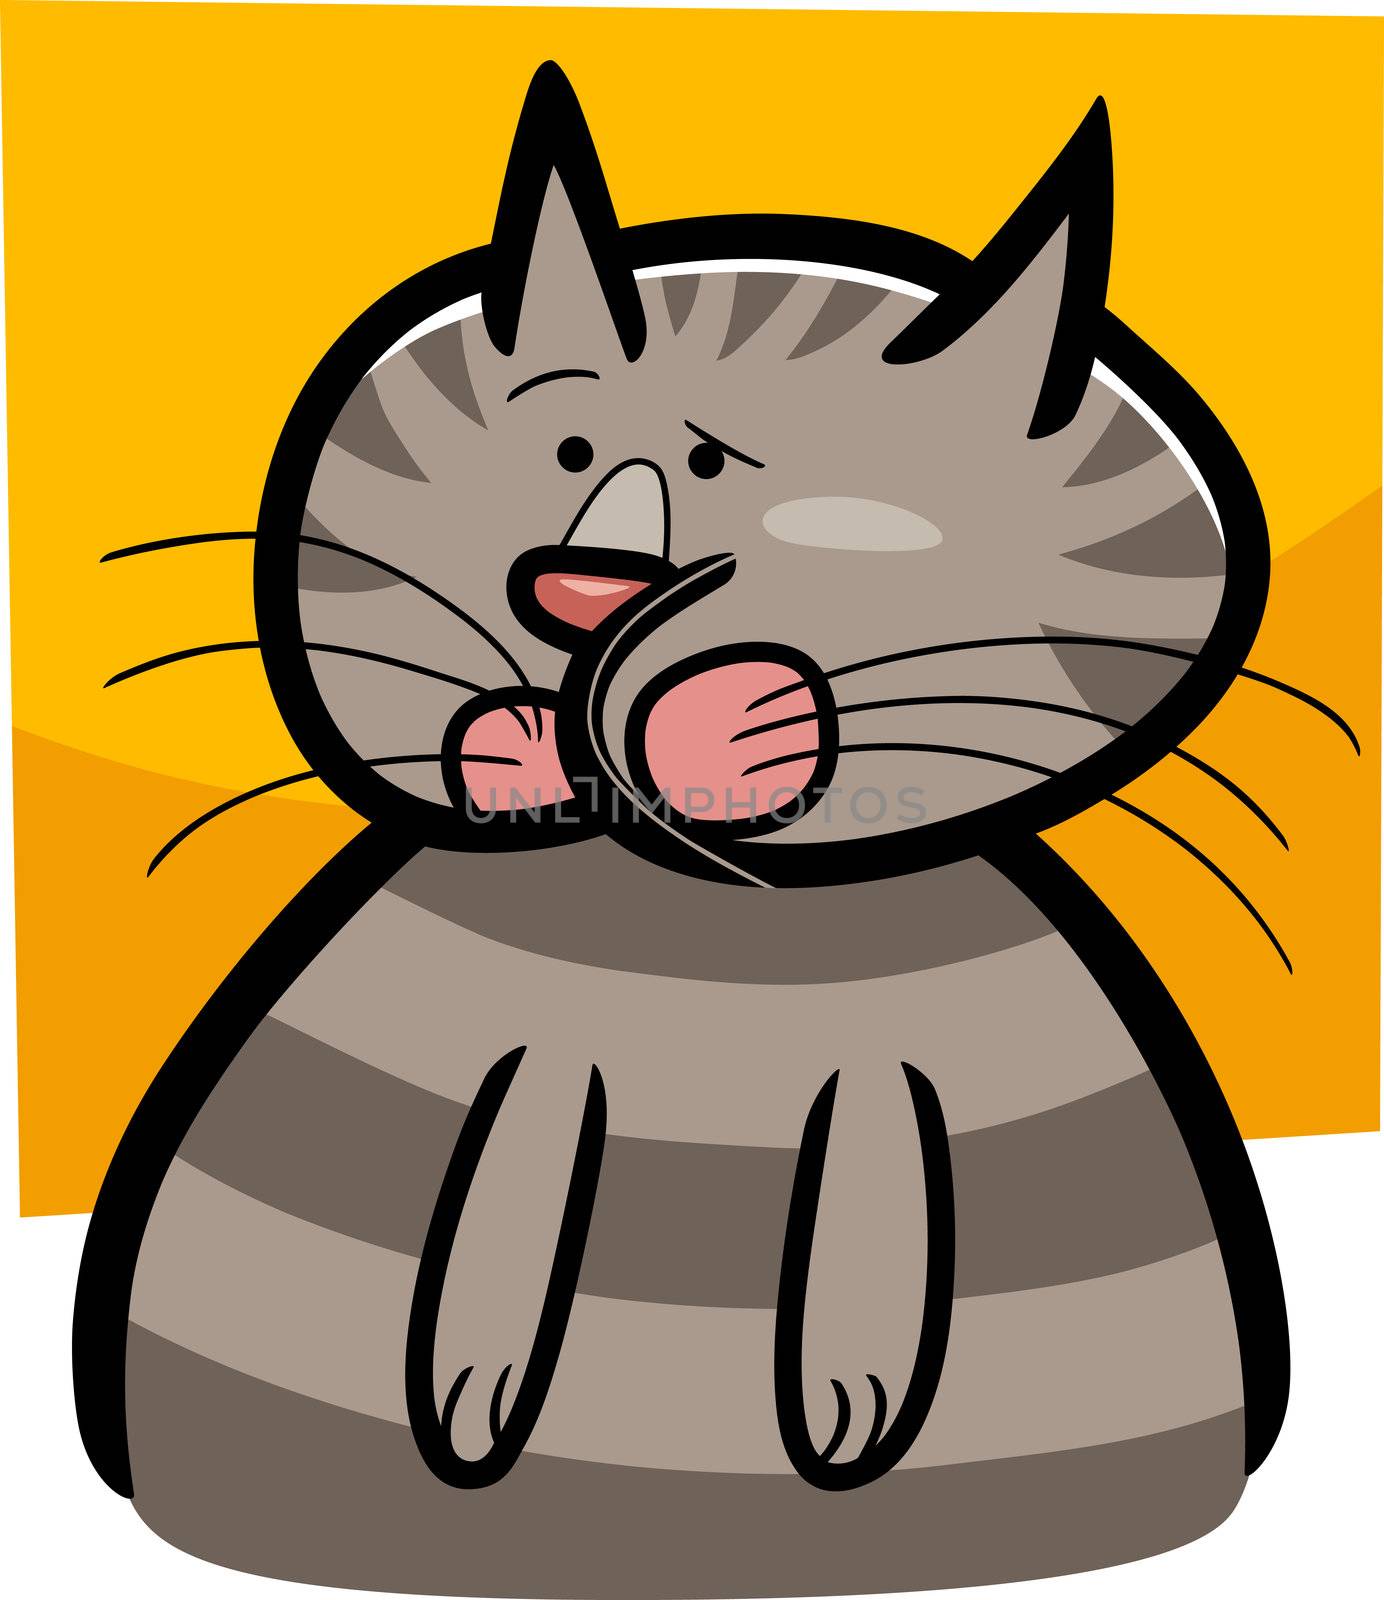 cartoon doodle illustration of cat or kitten